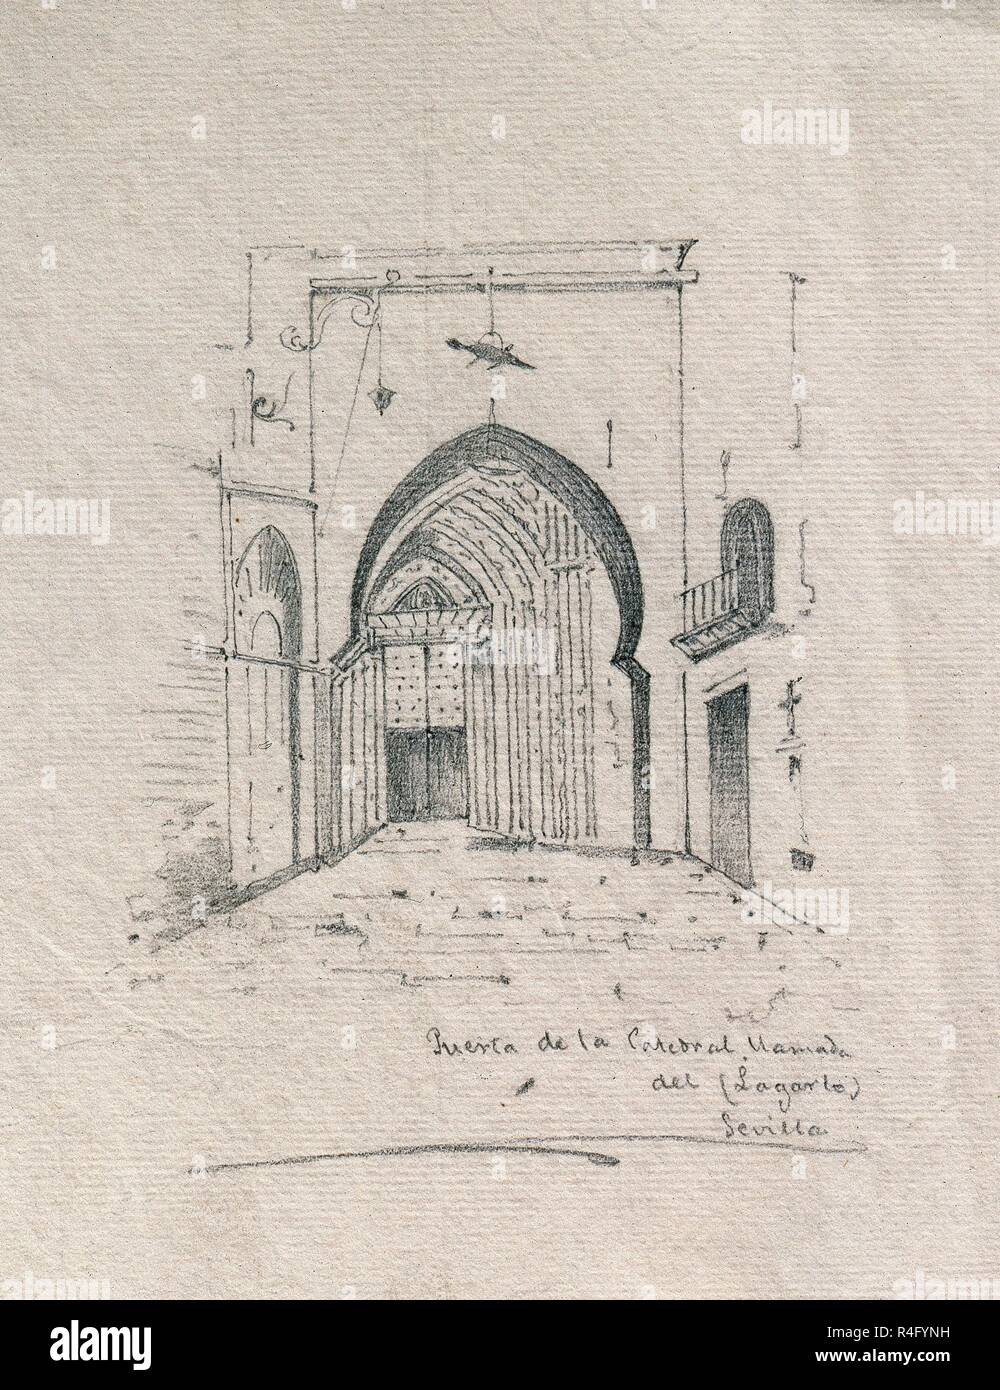 PUERTA DEL LAGARTO DE LA CATEDRAL DE SEVILLA - DIBUJO 1865. Author: DIAZ  GUMERSINDO. Location: PRIVATE COLLECTION. SPAIN Stock Photo - Alamy